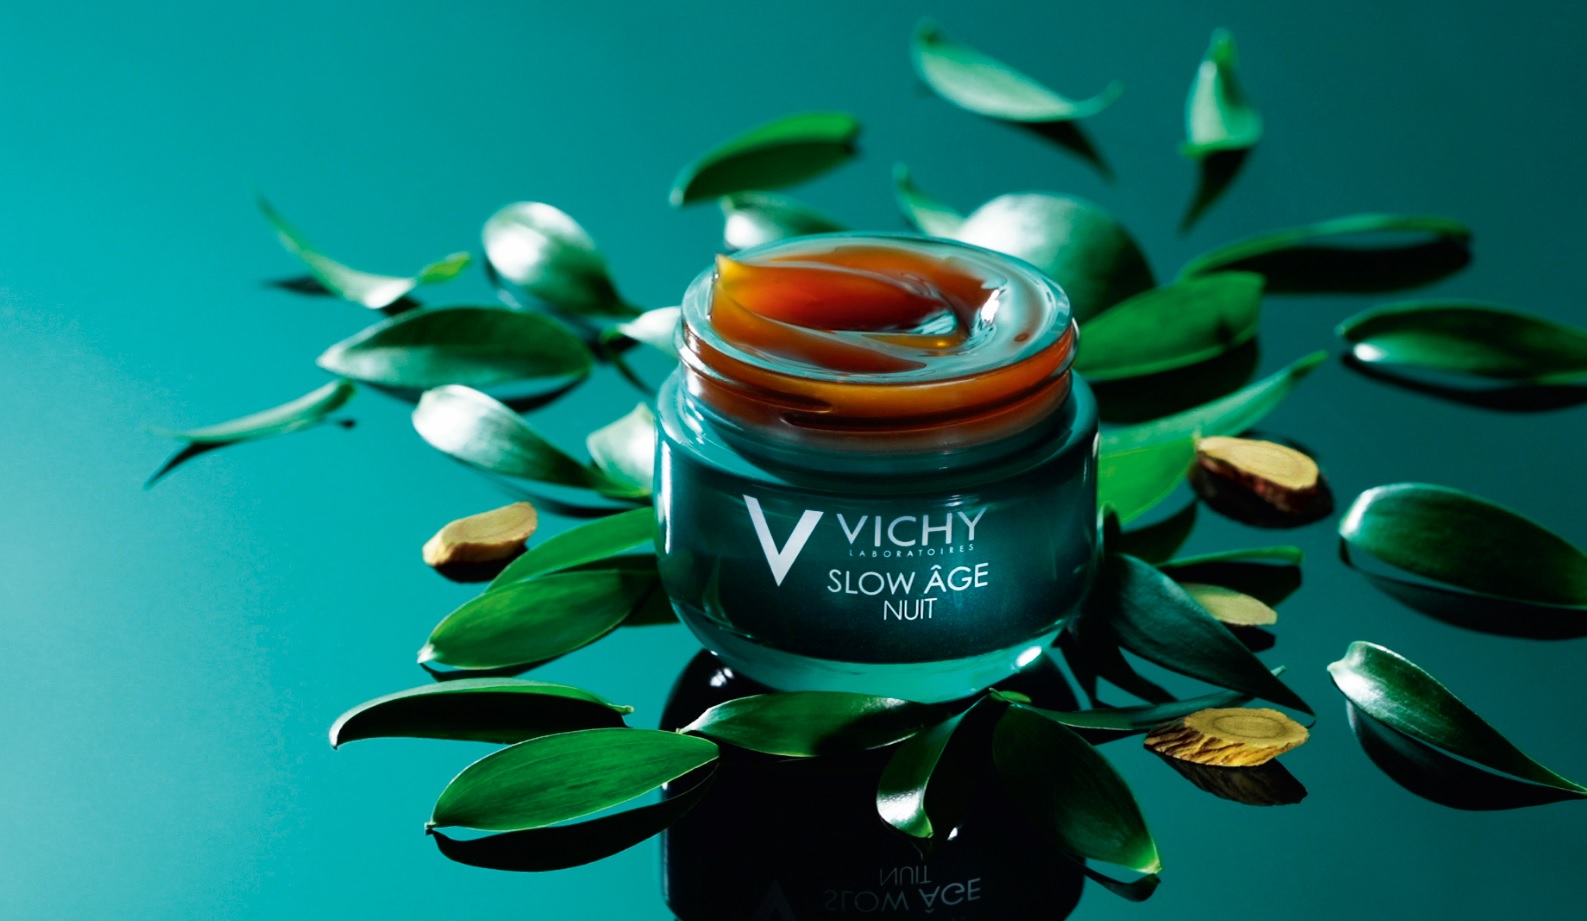 Новинка от Vichy: Восстанавливающий ночной крем и маска для интенсивной оксигенации кожи Slow Age Nuit